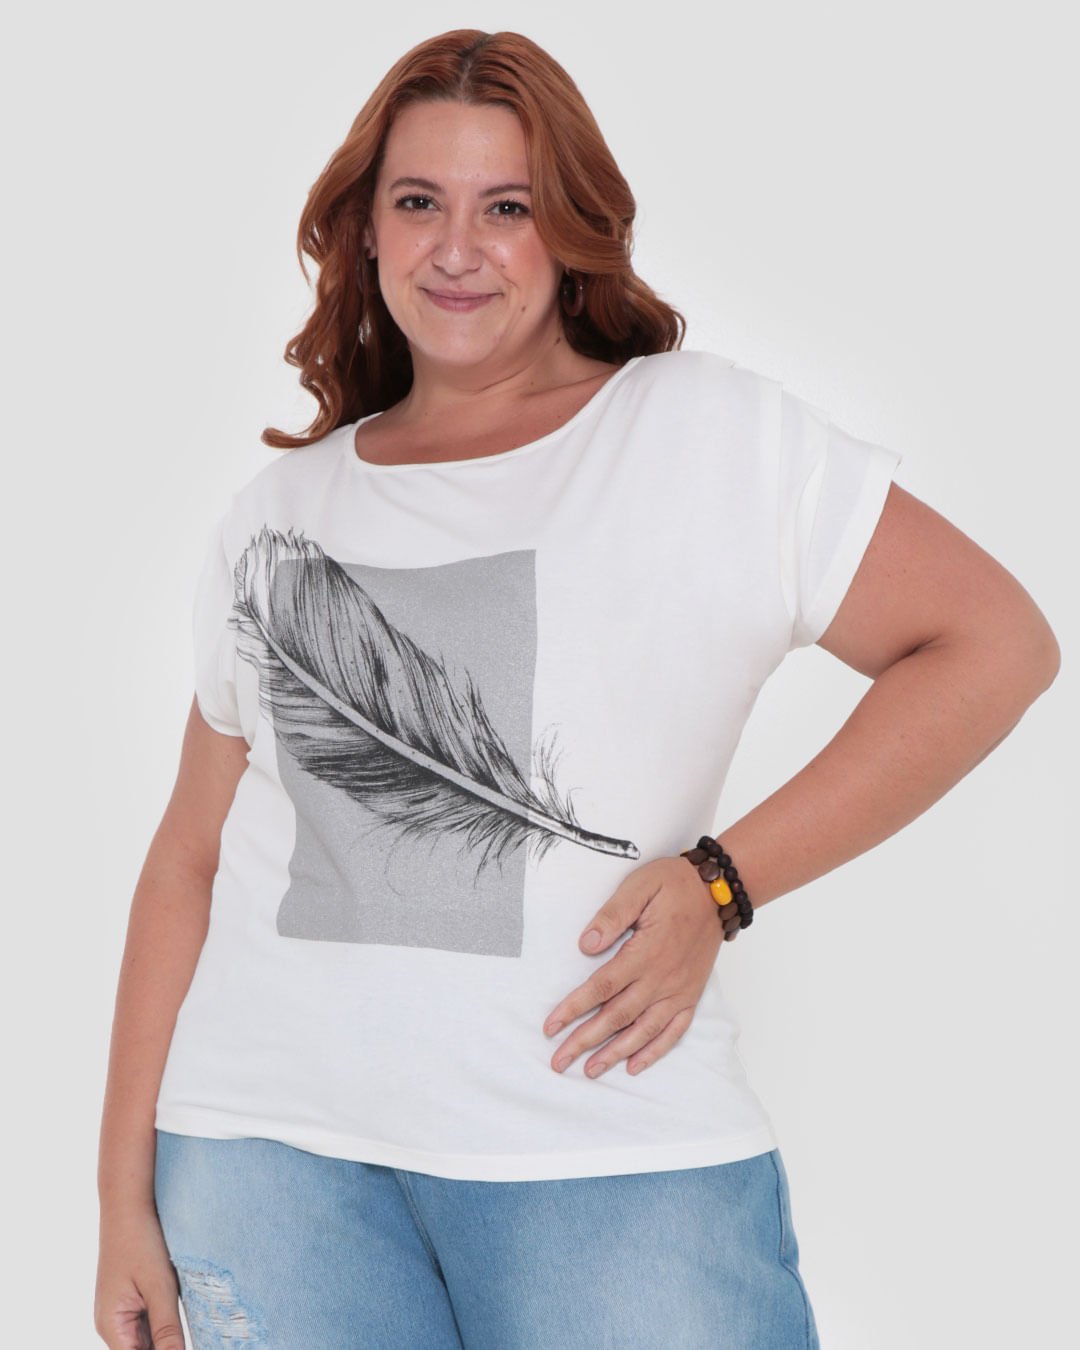 Blusa Plus Size Feminina Estampa Folha Strass Off White